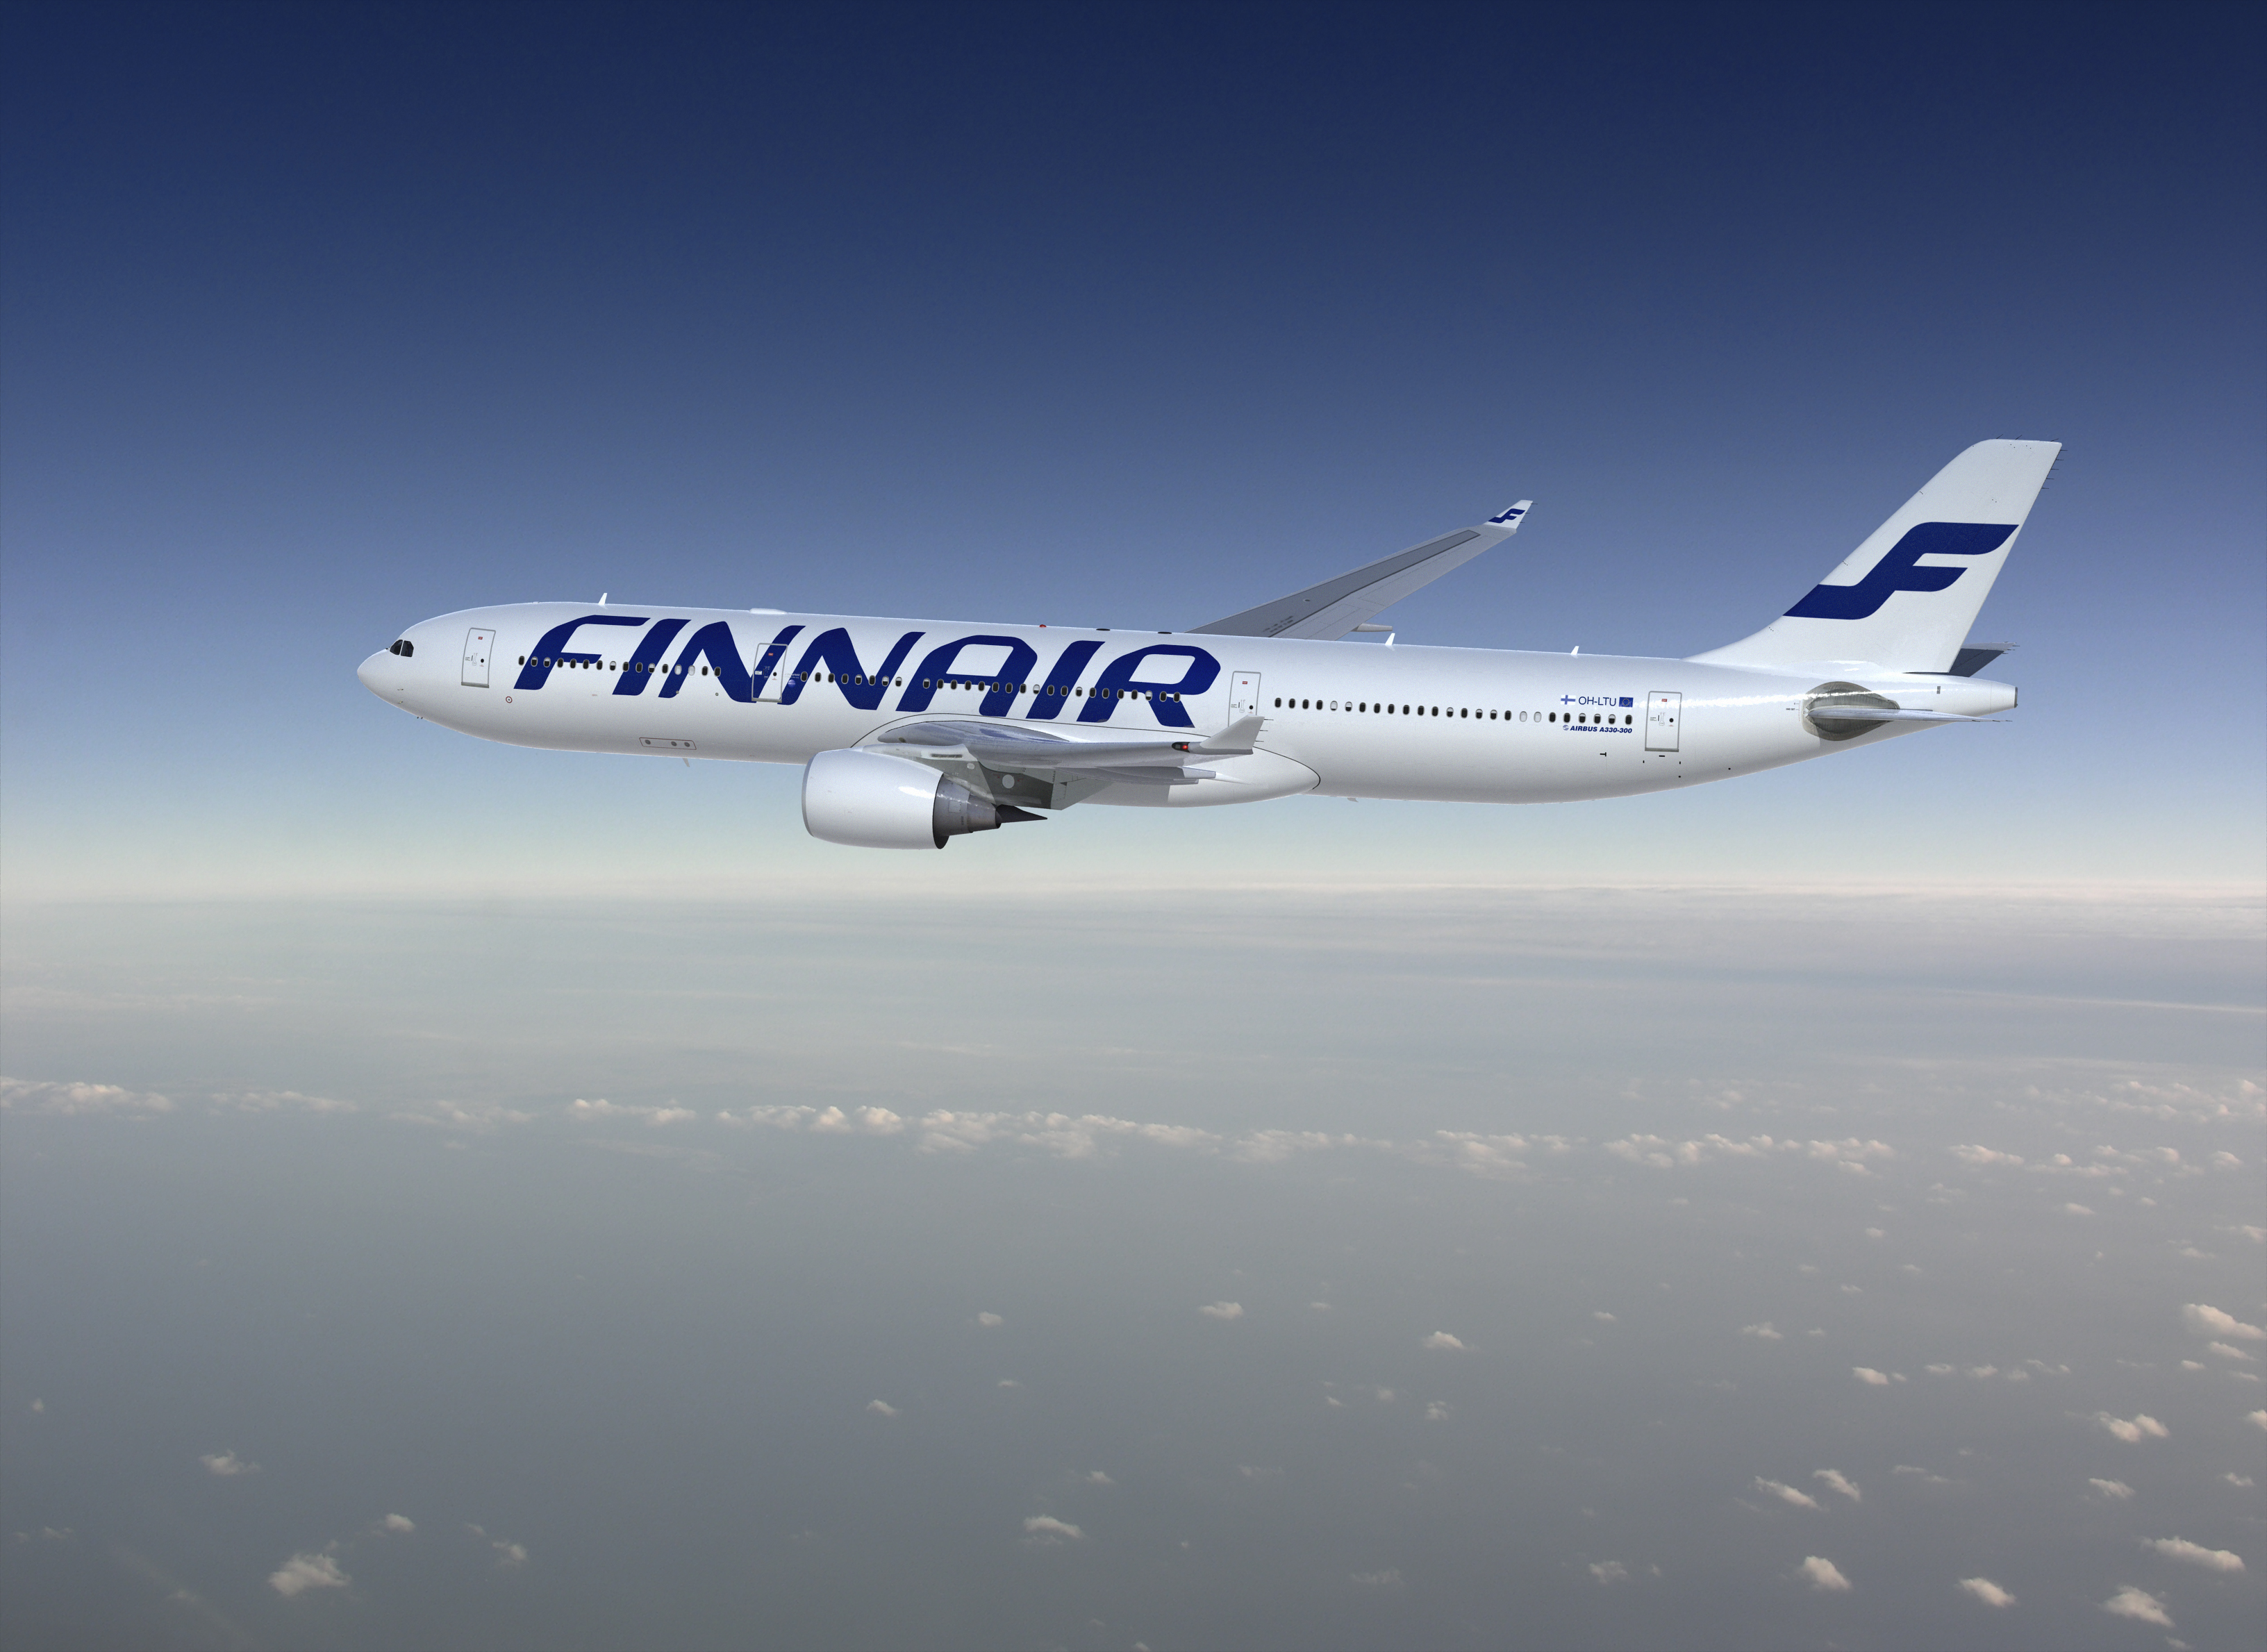 Le billet light de Finnair s'envolera en Europe en mai